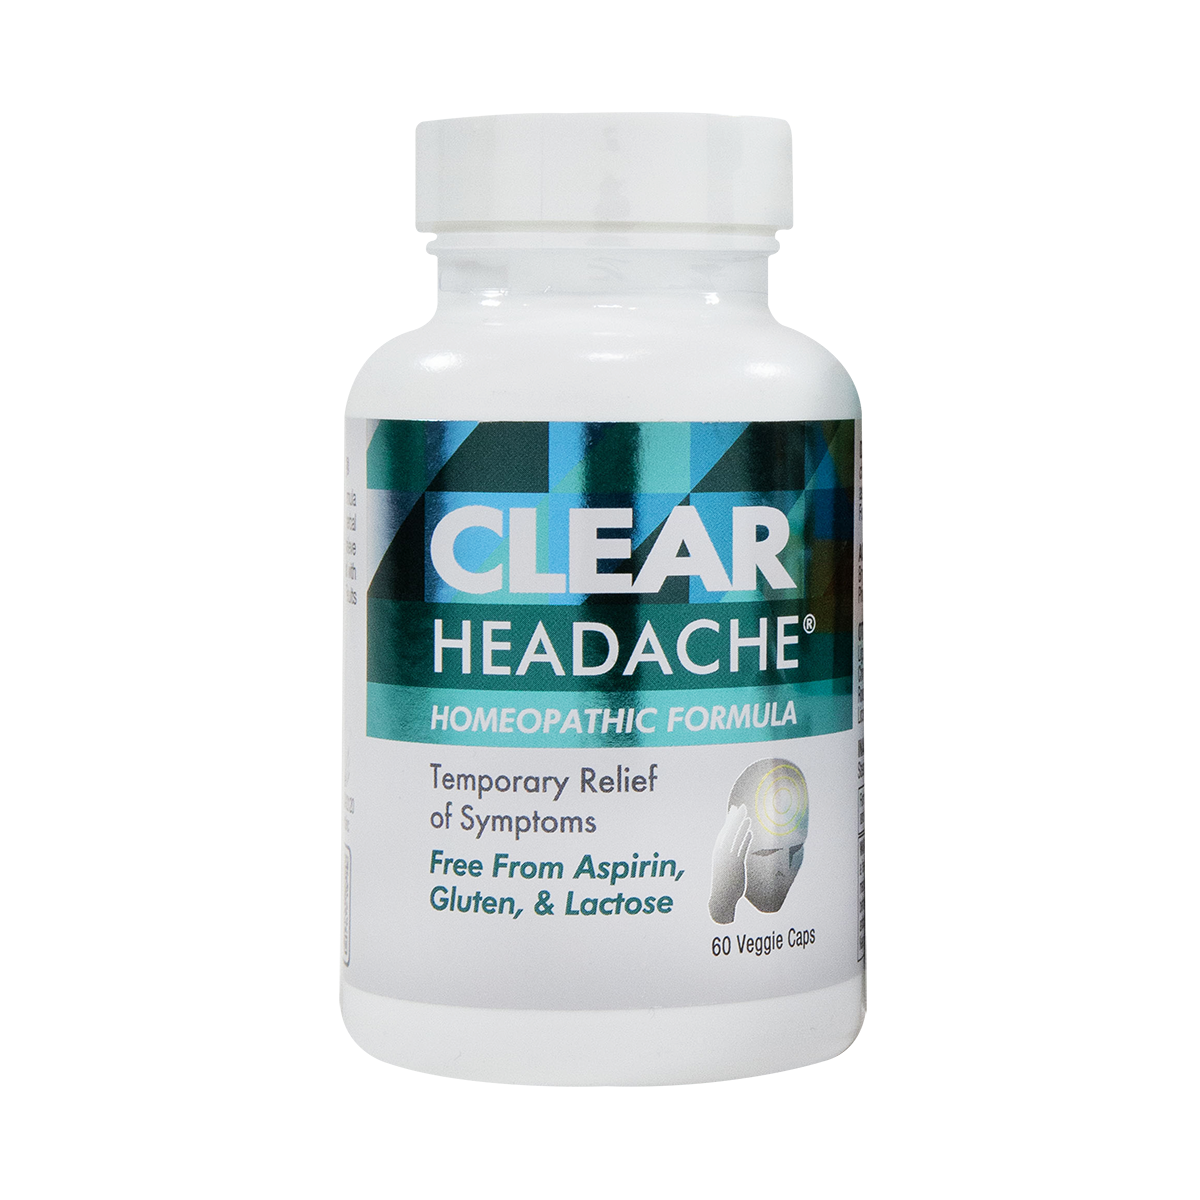 Clear Headache